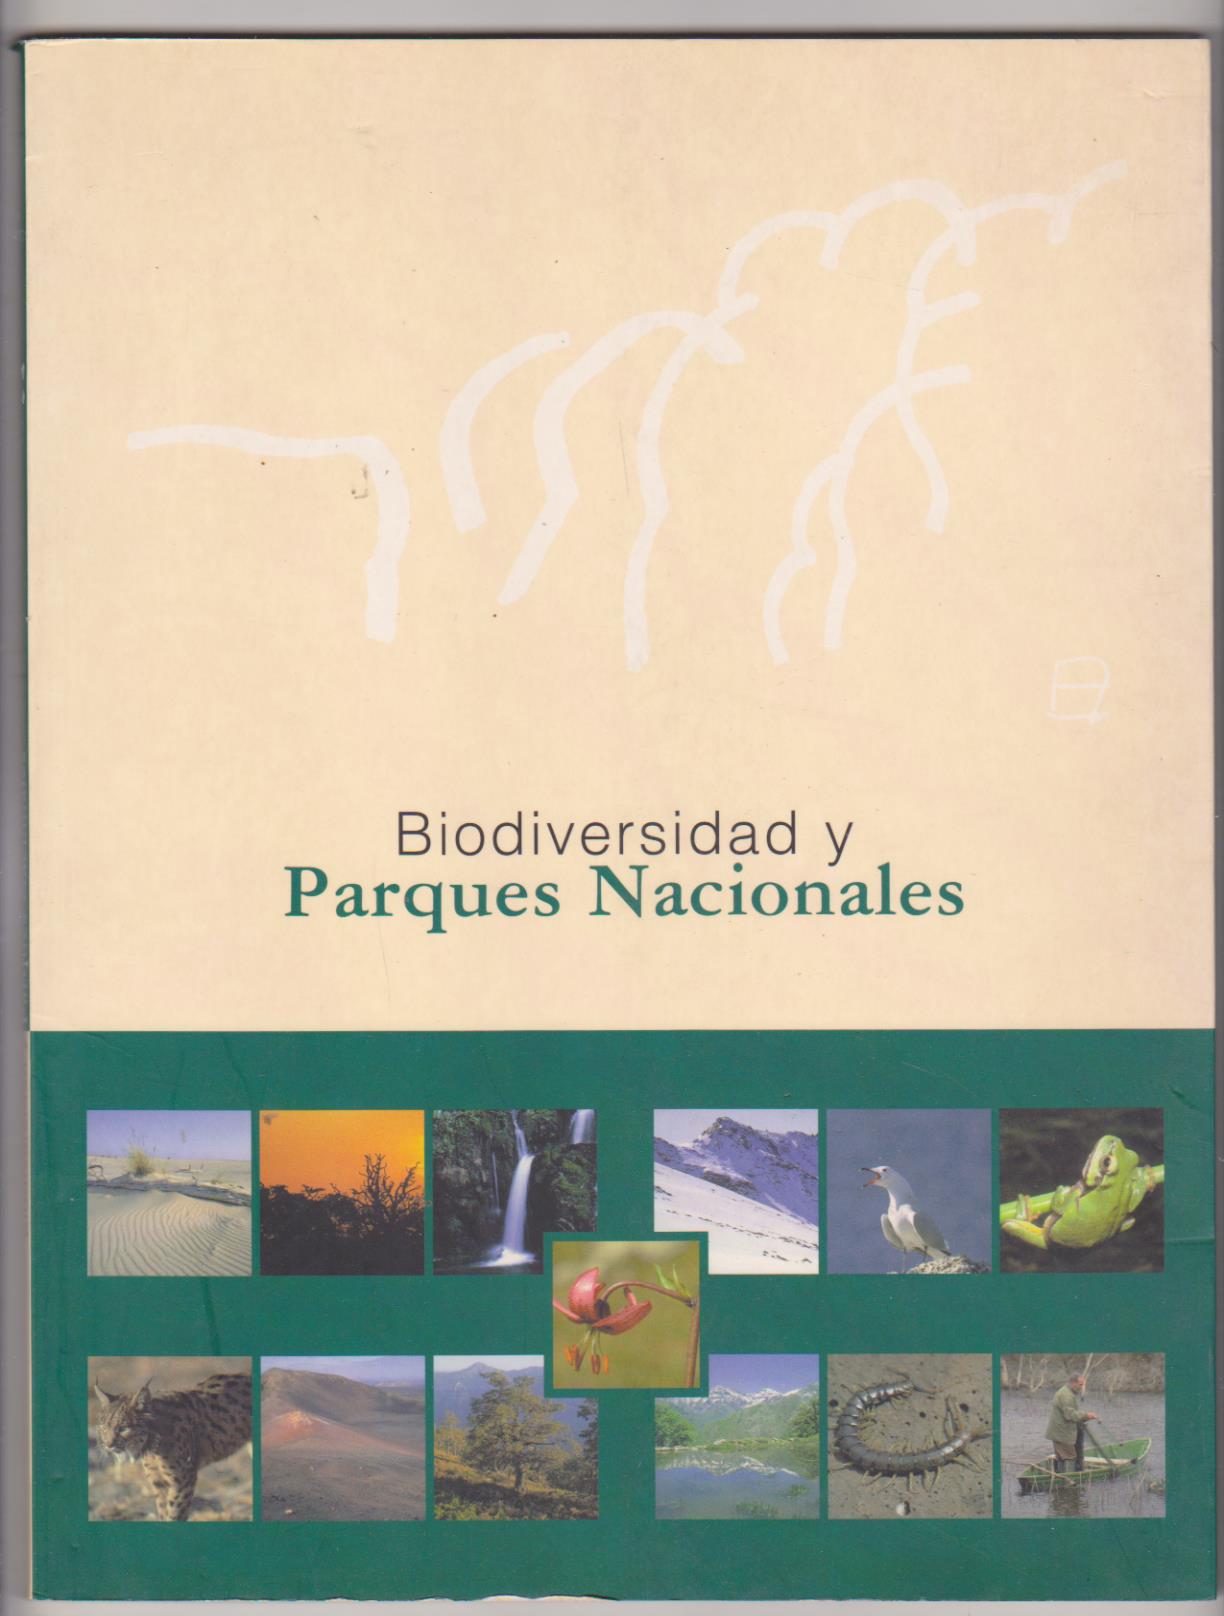 Biodiversidad y Parques nacionales. Ministerio de Medio Ambiente 1999